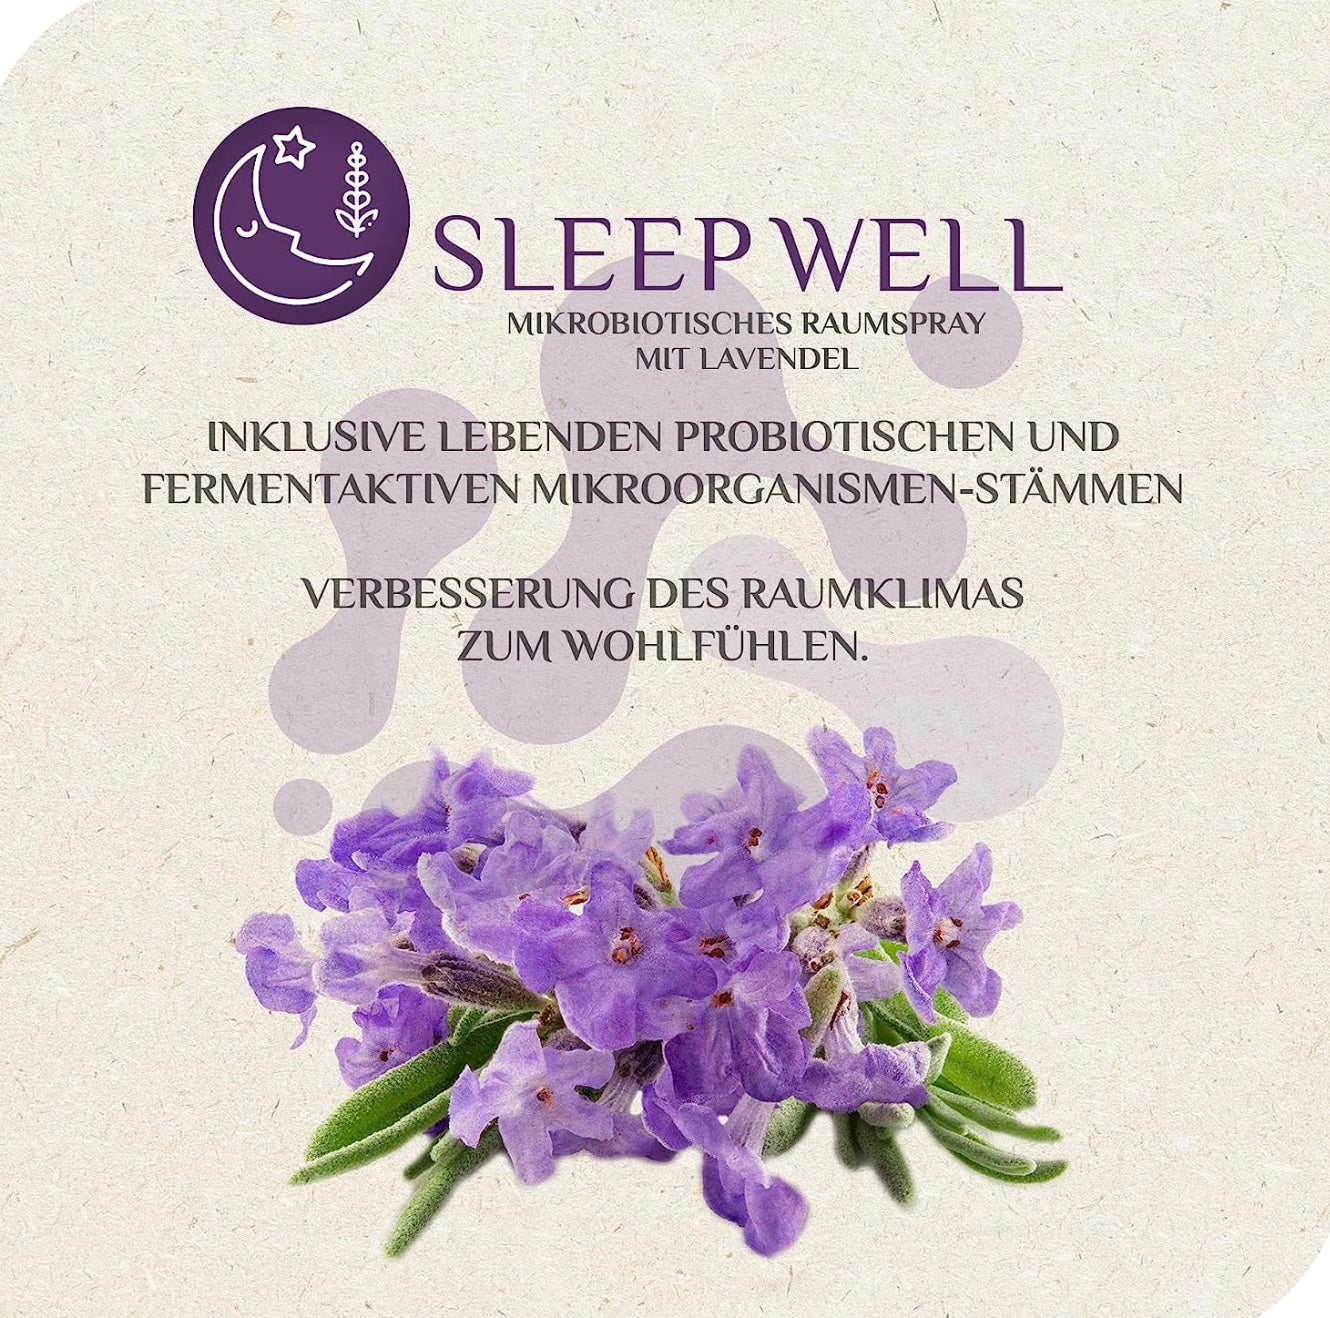 MikroVeda SLEEP WELL mikrobiotisches Raumspray Lavendel-Duft 50 ml